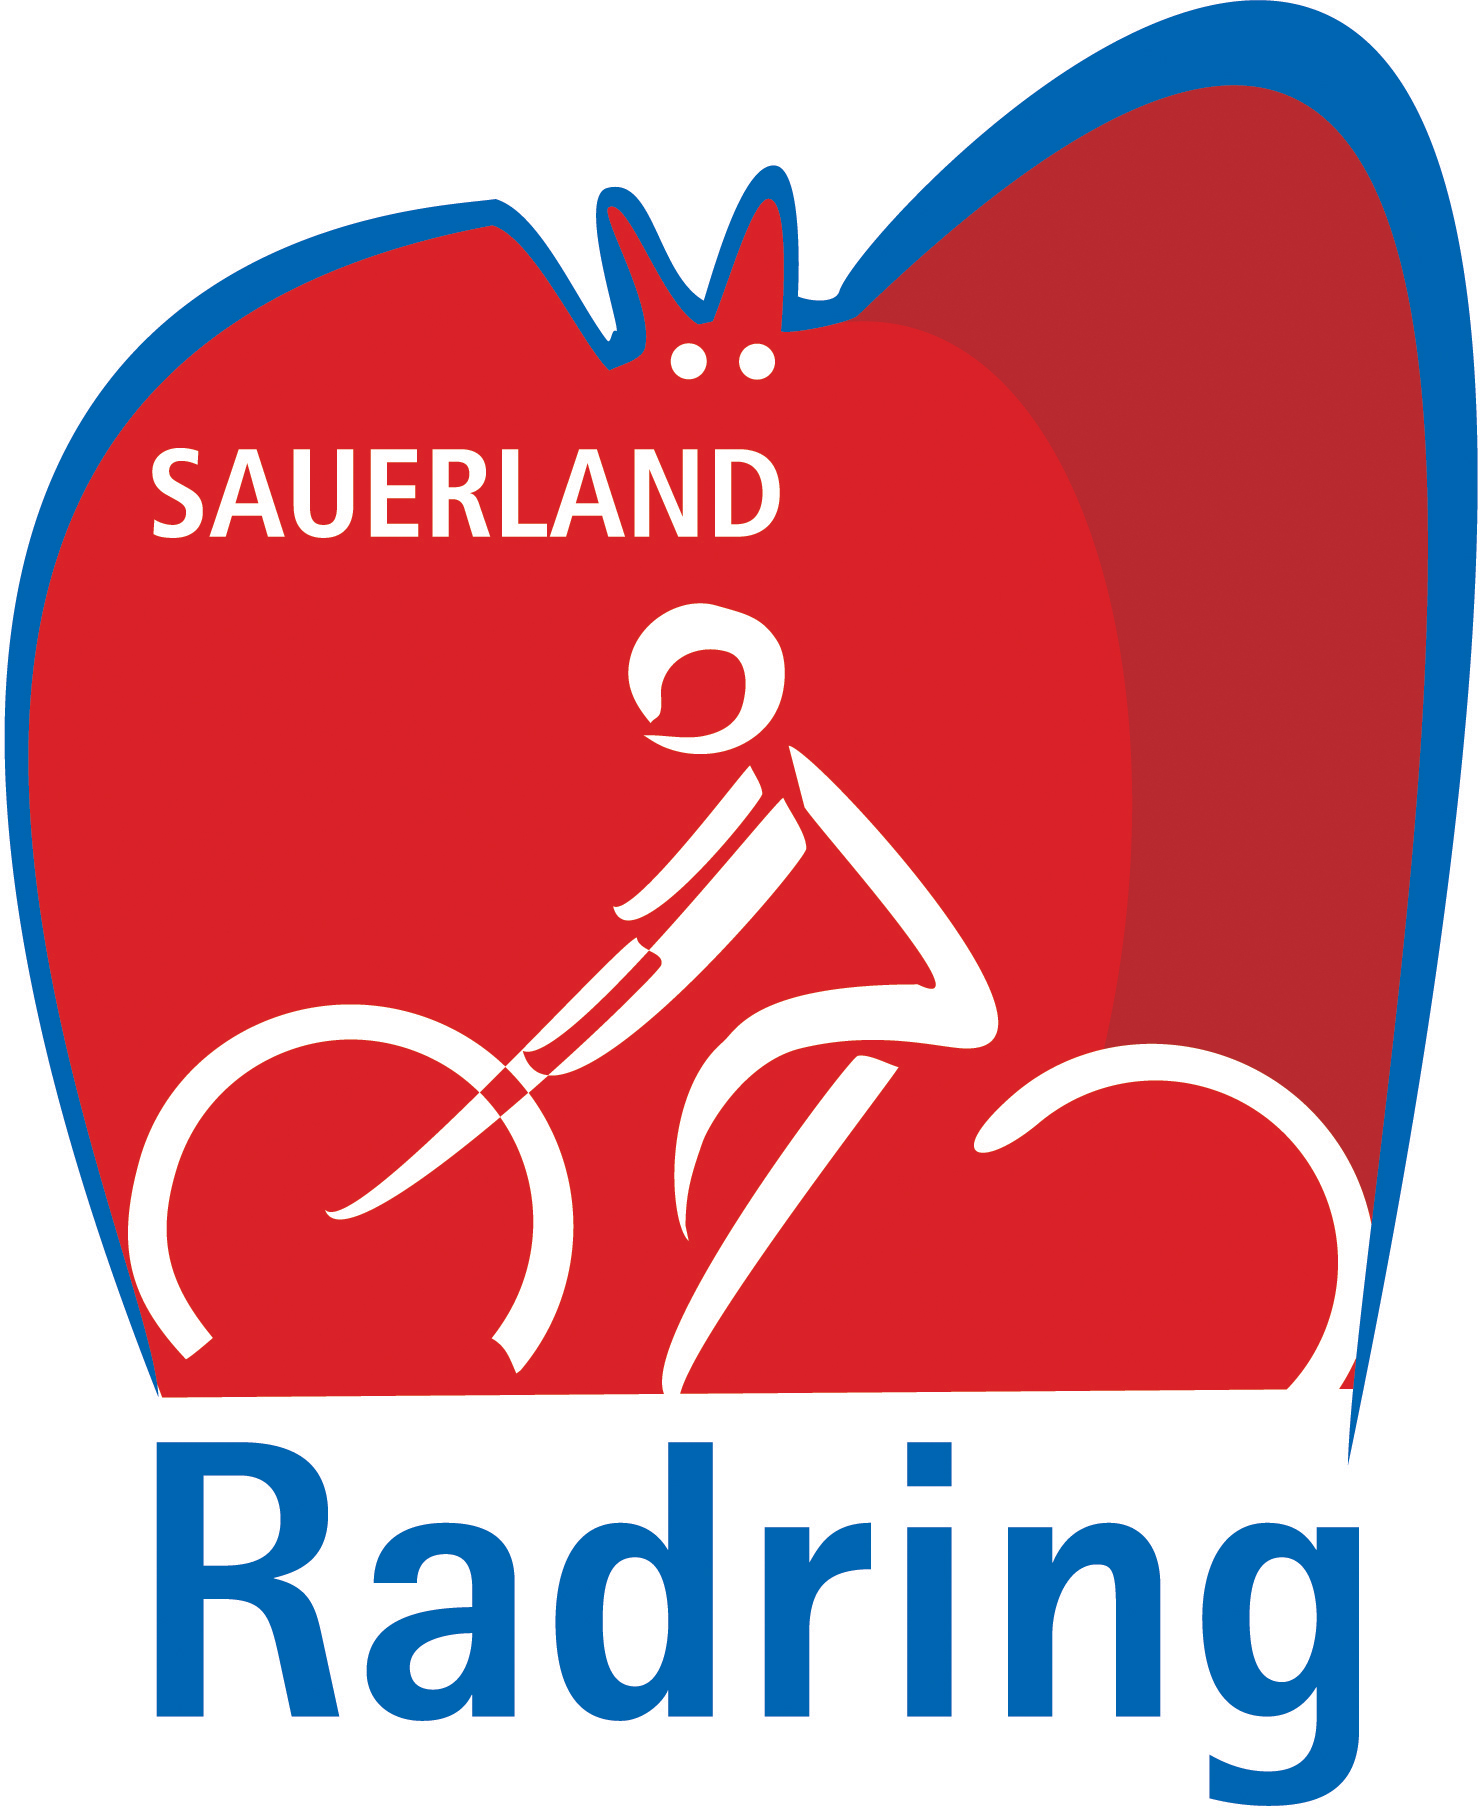 Radler Saisonabschlussfahrt am 17.09. und 18.09.2020 (Do./Fr.) über dem Sauerlandradring